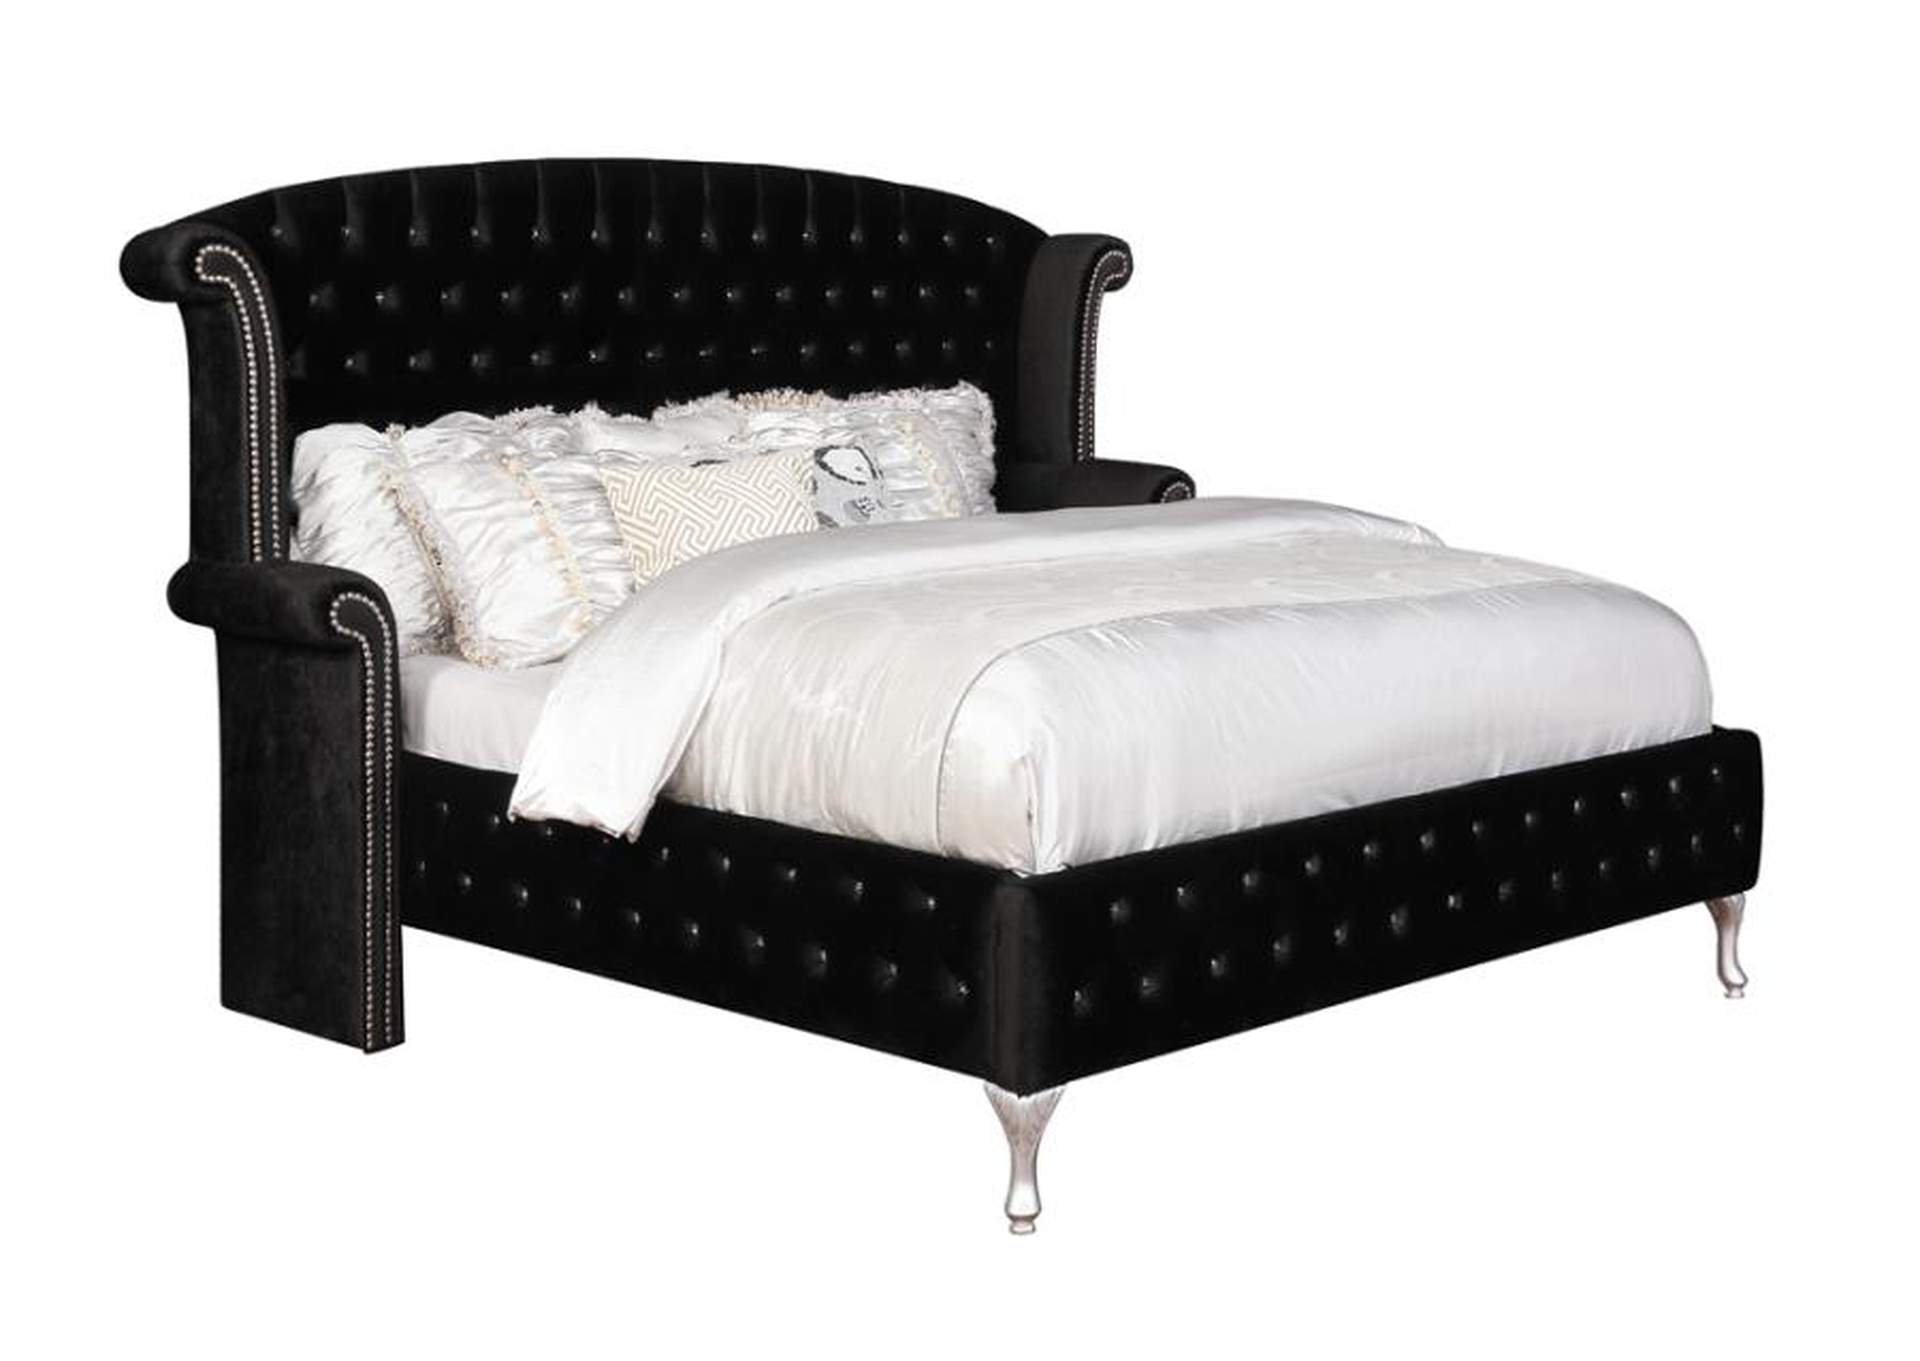 Deanna Eastern King Tufted Upholstered Bed Black,Coaster Furniture